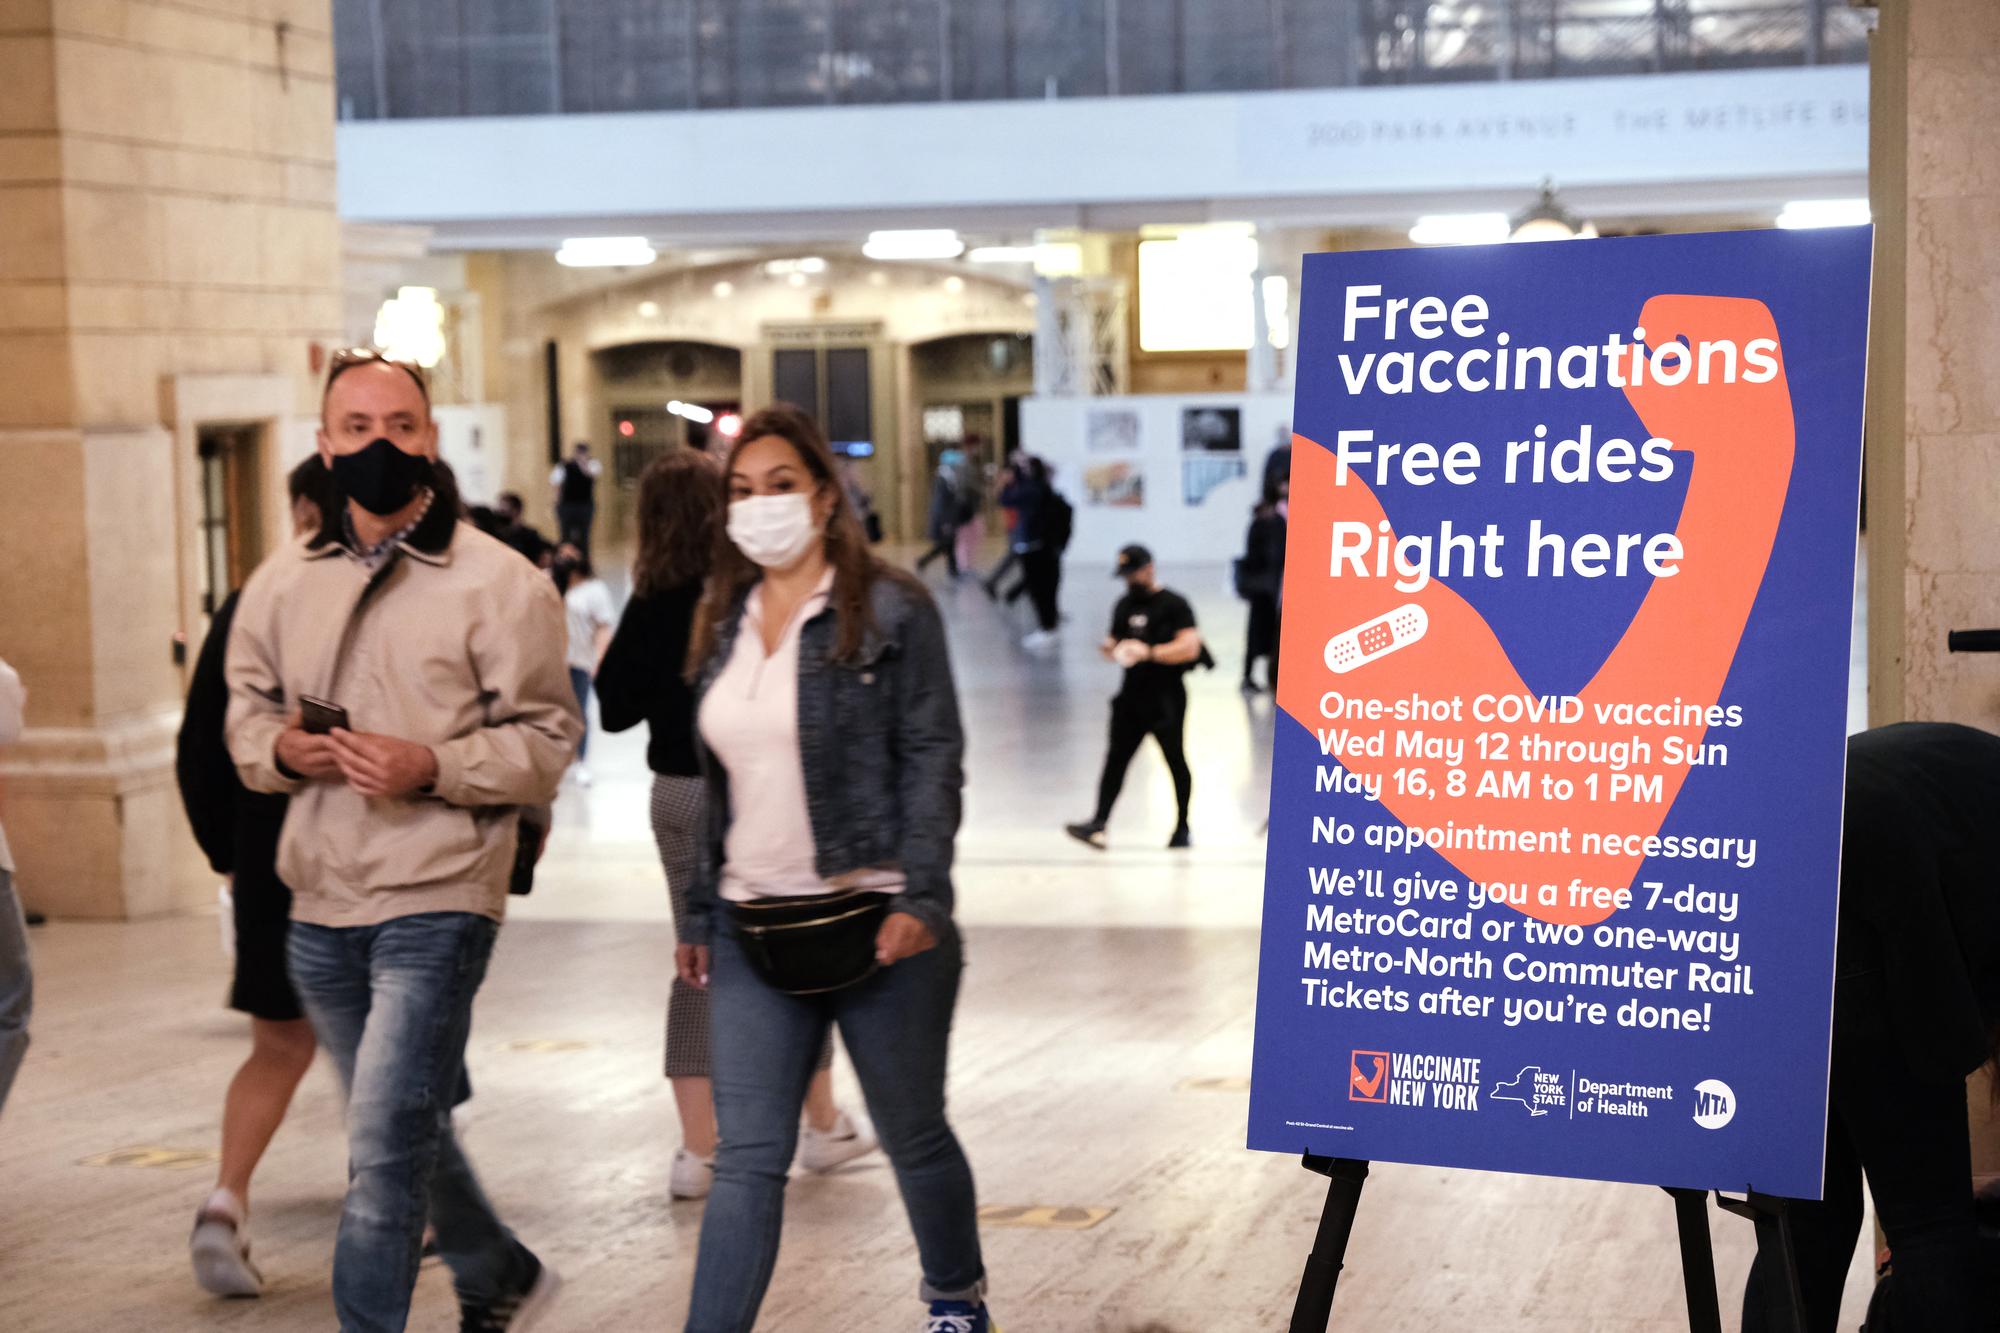 La gare de Grand Central, à New York, s'est transformée en un centre de vaccination pour touristes et New-Yorkais hésitants. [GETTY IMAGES VIA AFP - SPENCER PLATT]